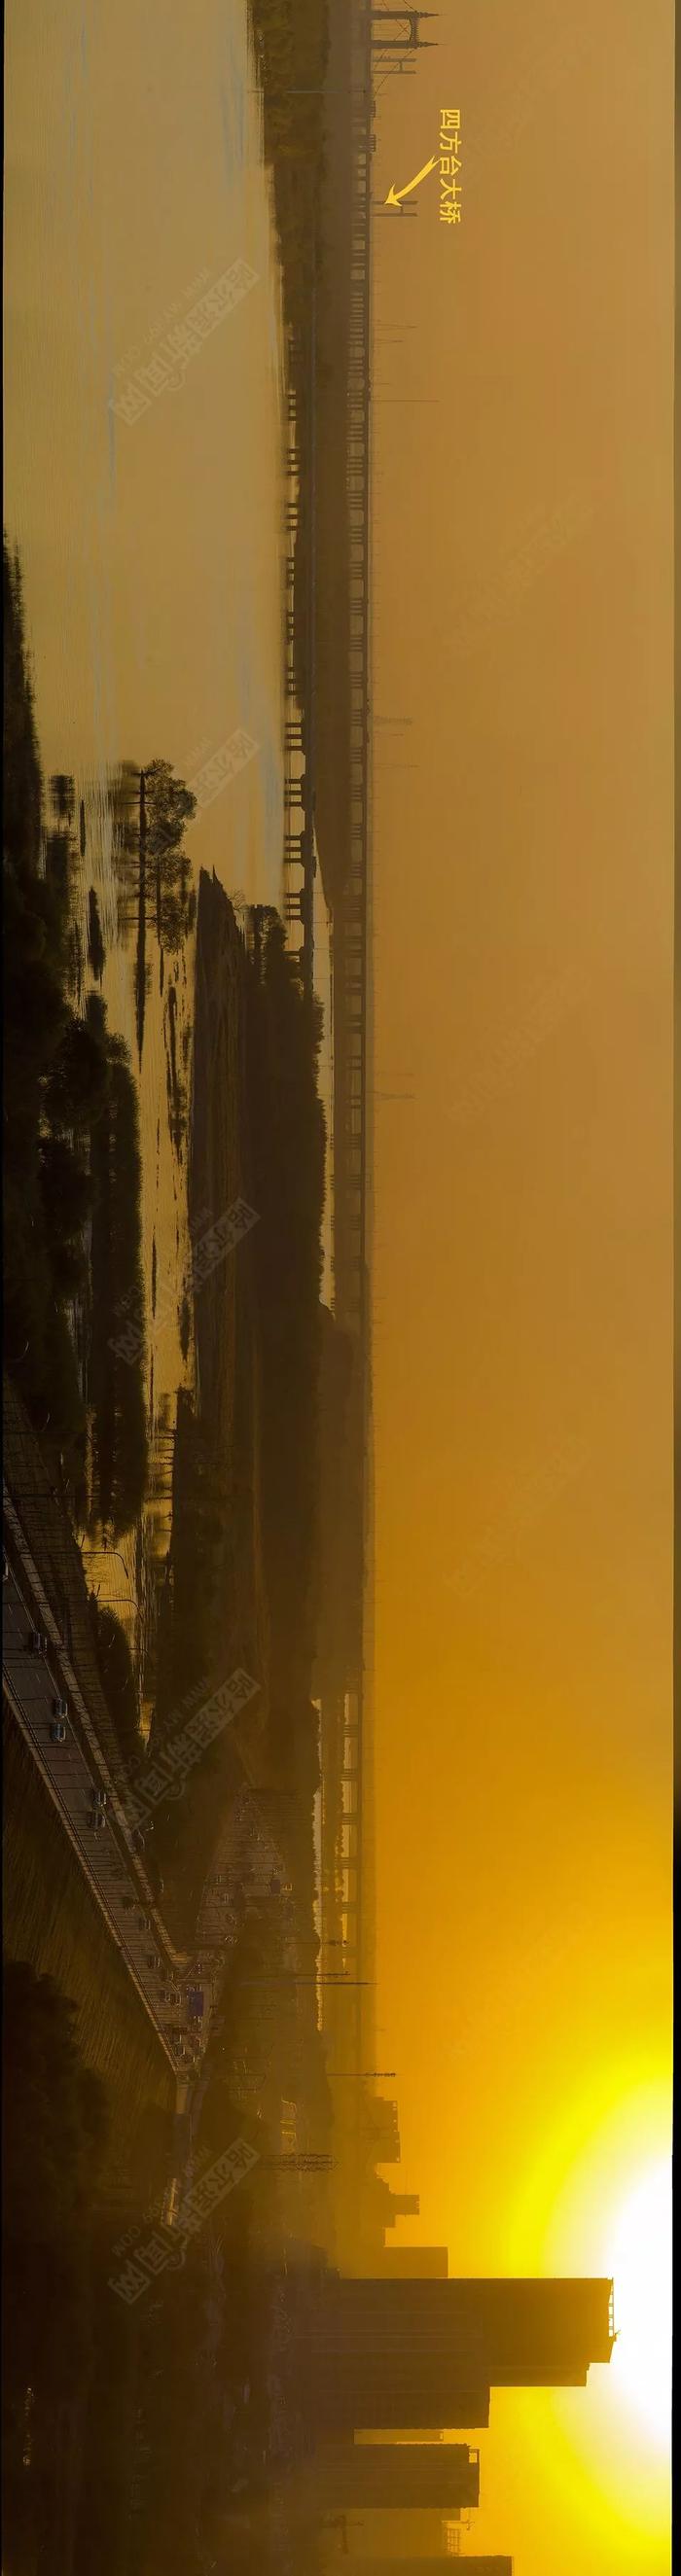 巨幅丨一张图拍下哈尔滨市区段松花江上八座桥#另类视角看冰城#